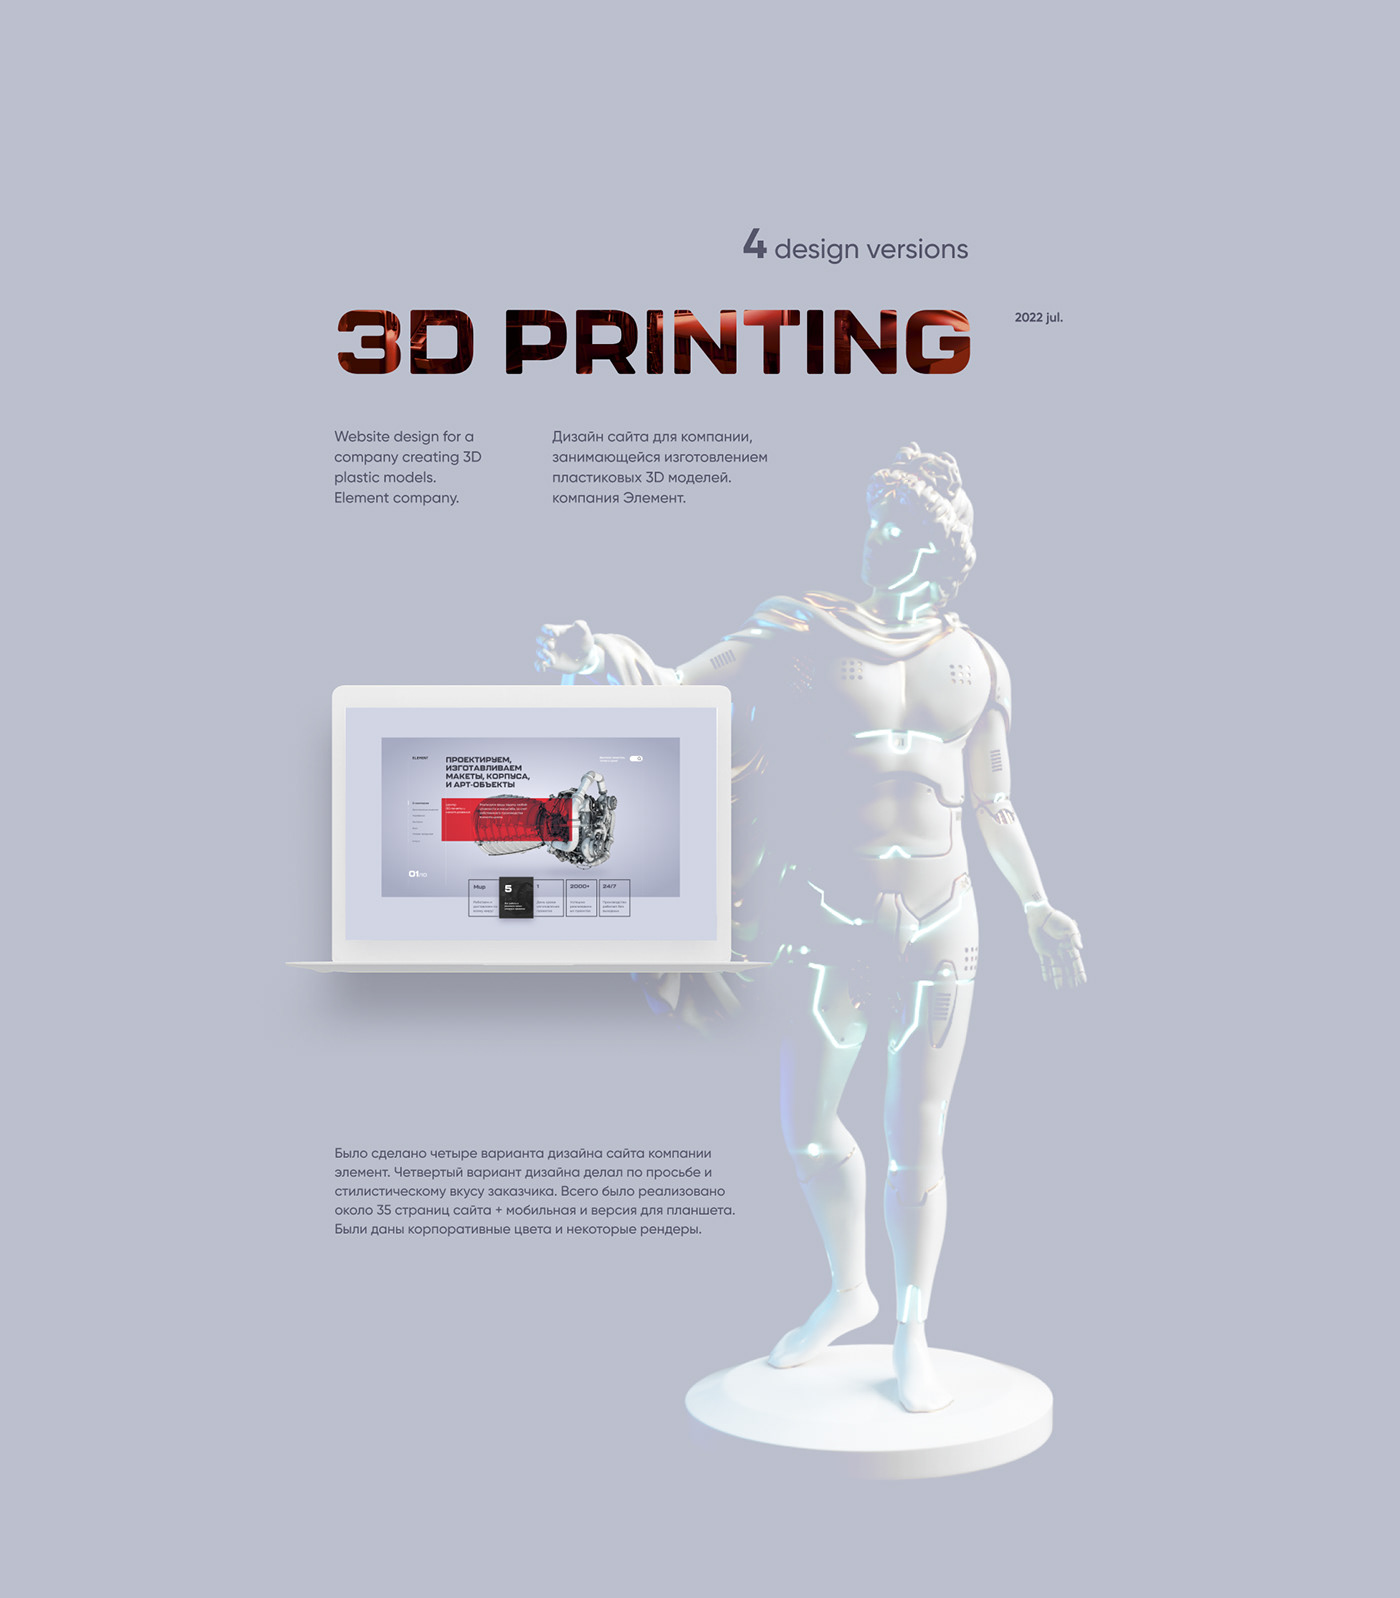 3D 3d modeling 3d printing webdisign Website Printing 3d modeling website 3d prining website design 2022 technical